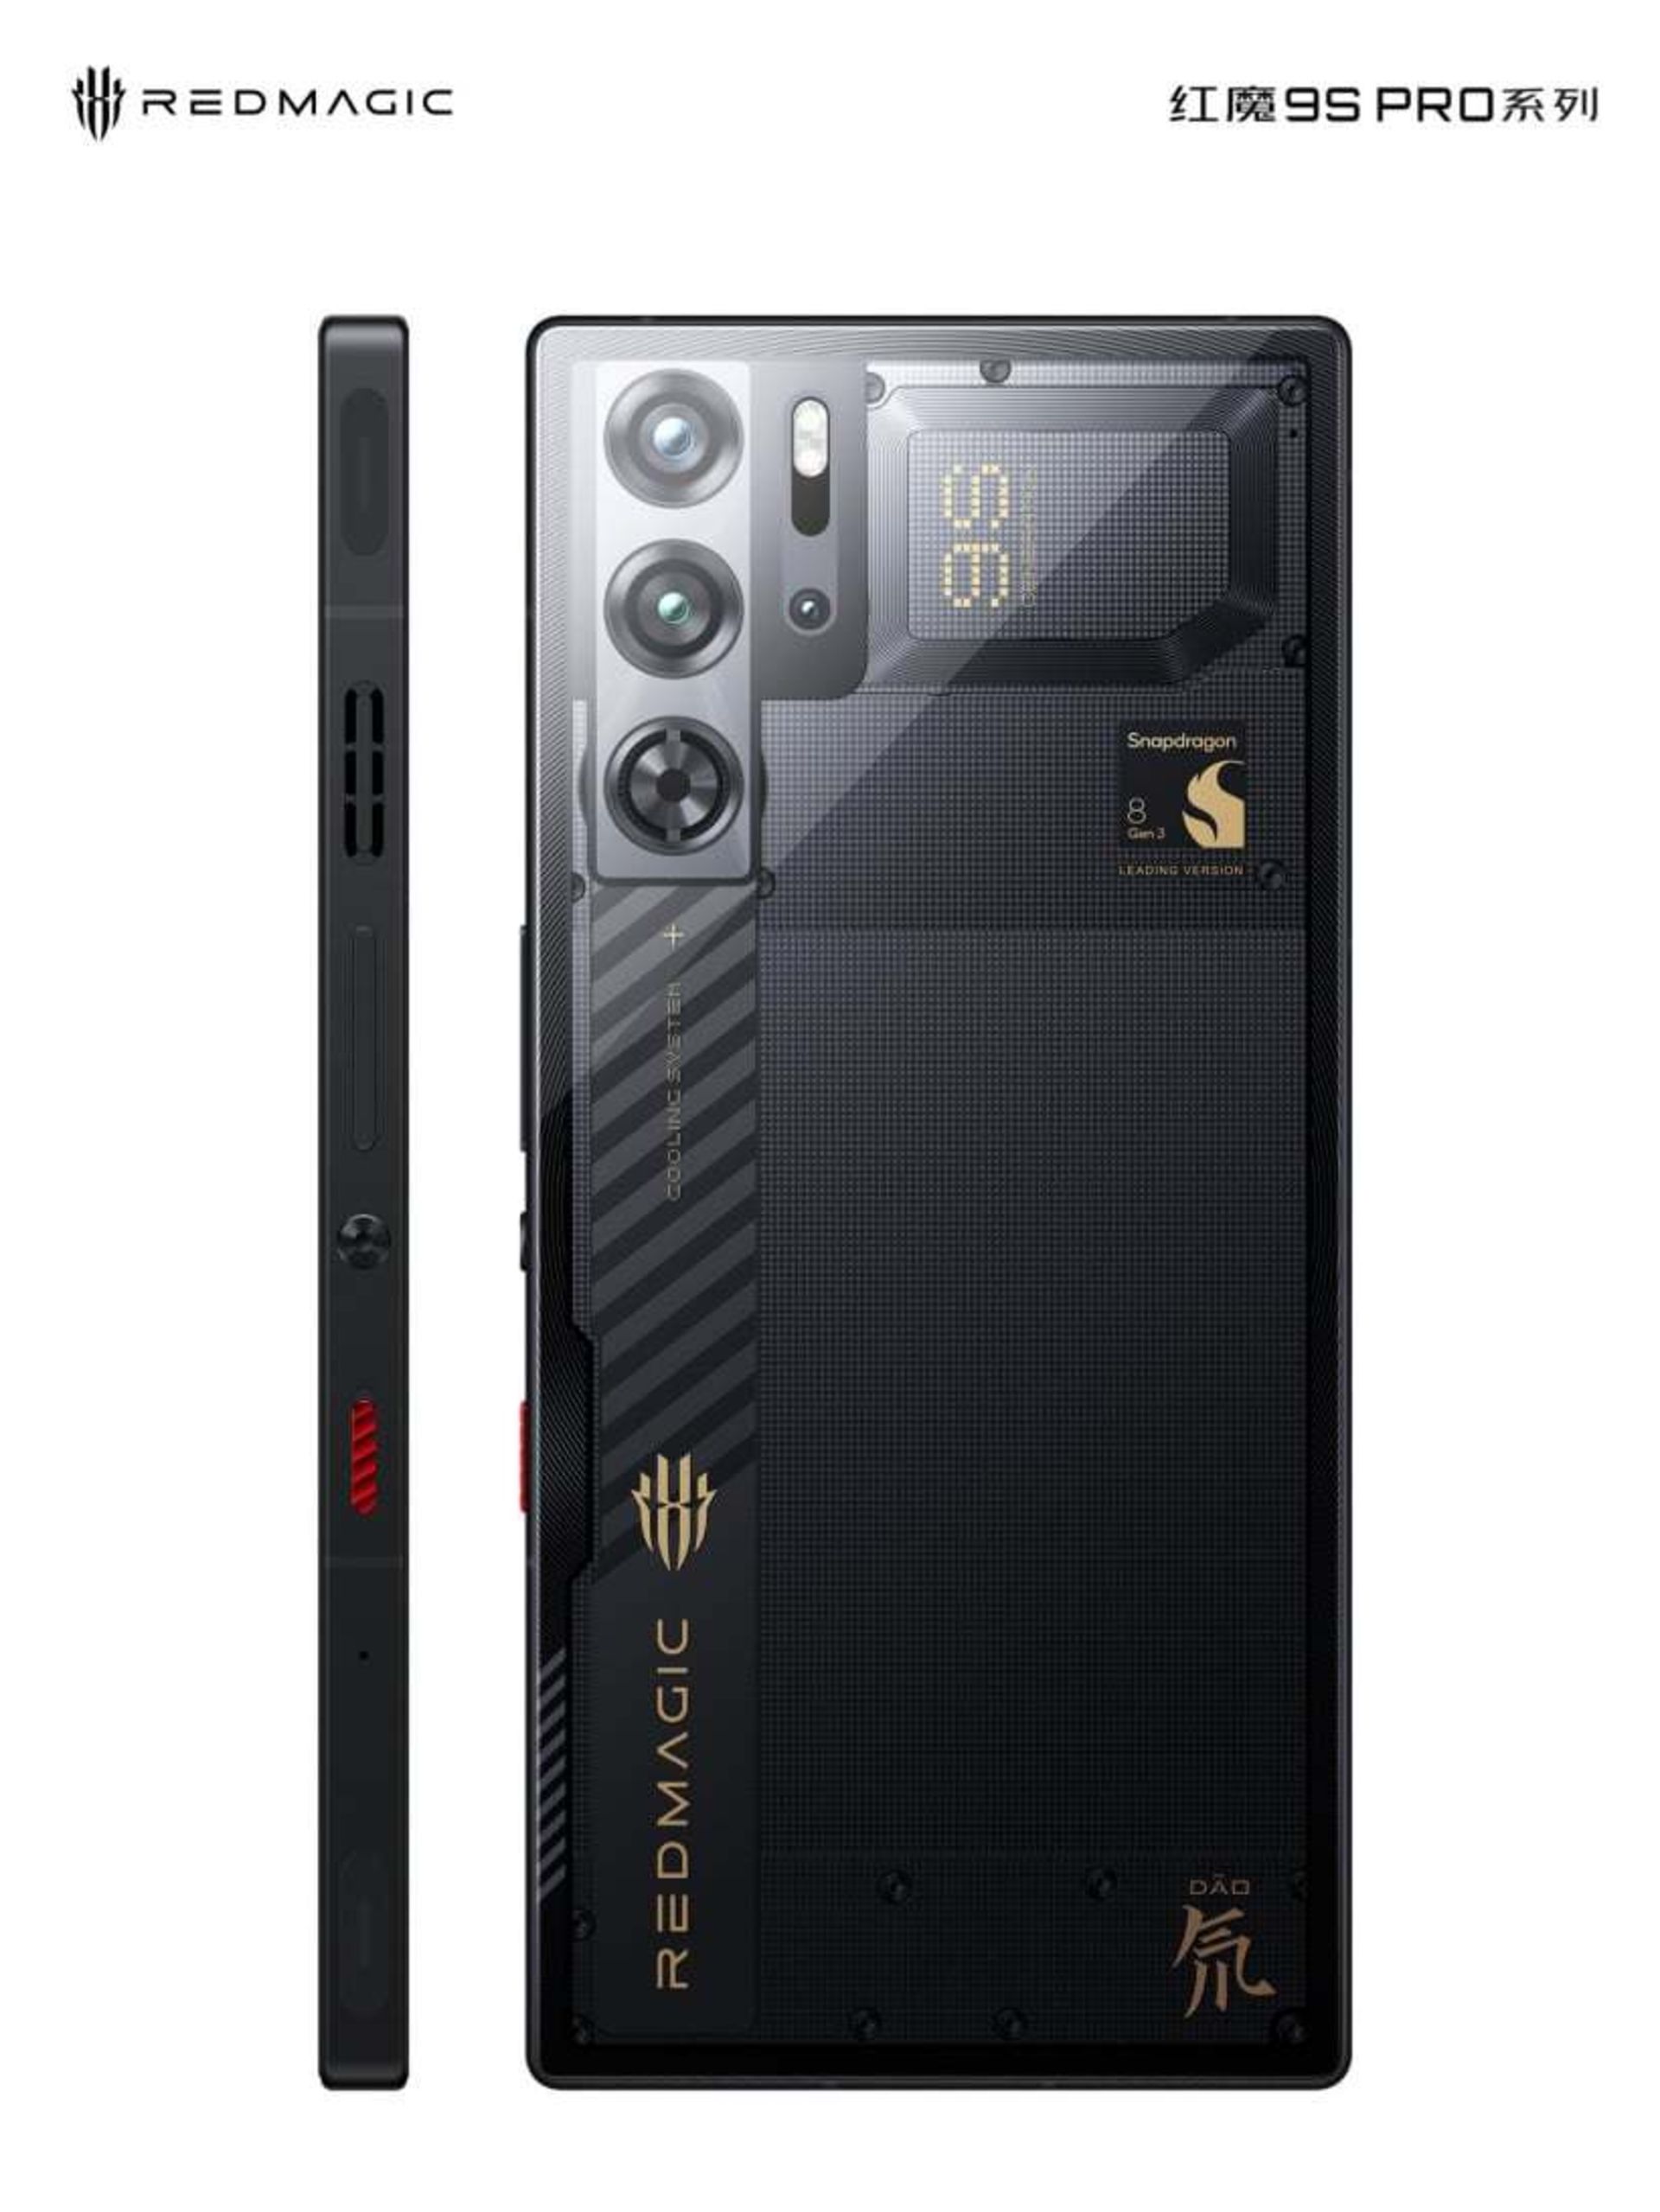  گوشی ردمجیک 9s Pro در رنگ سیاه شفاف